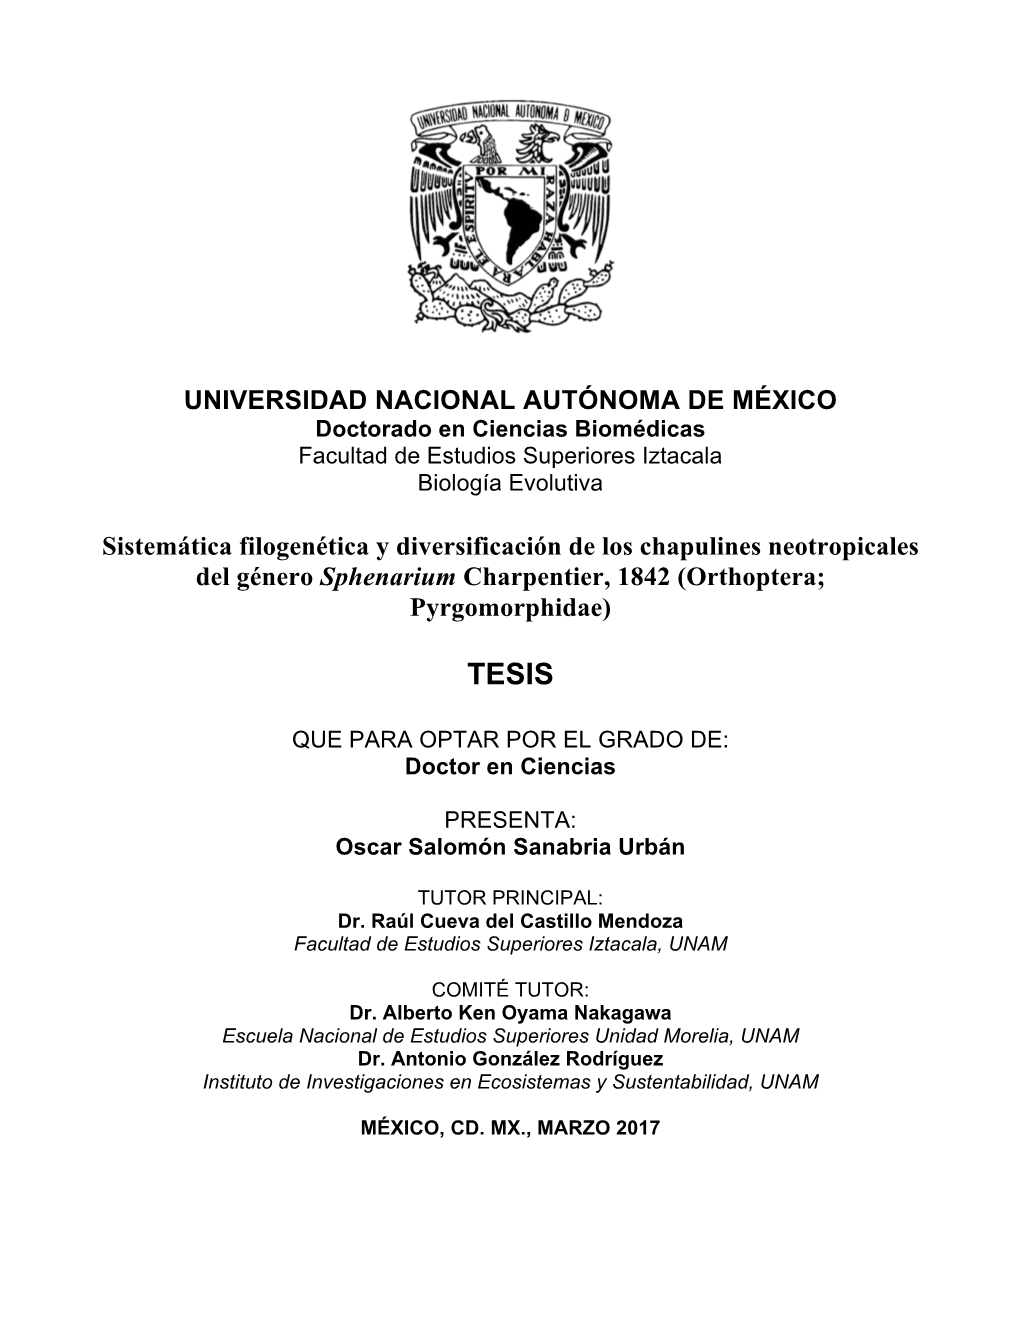 TESIS: Sistemática Filogenética Y Diversificación De Los Chapulines